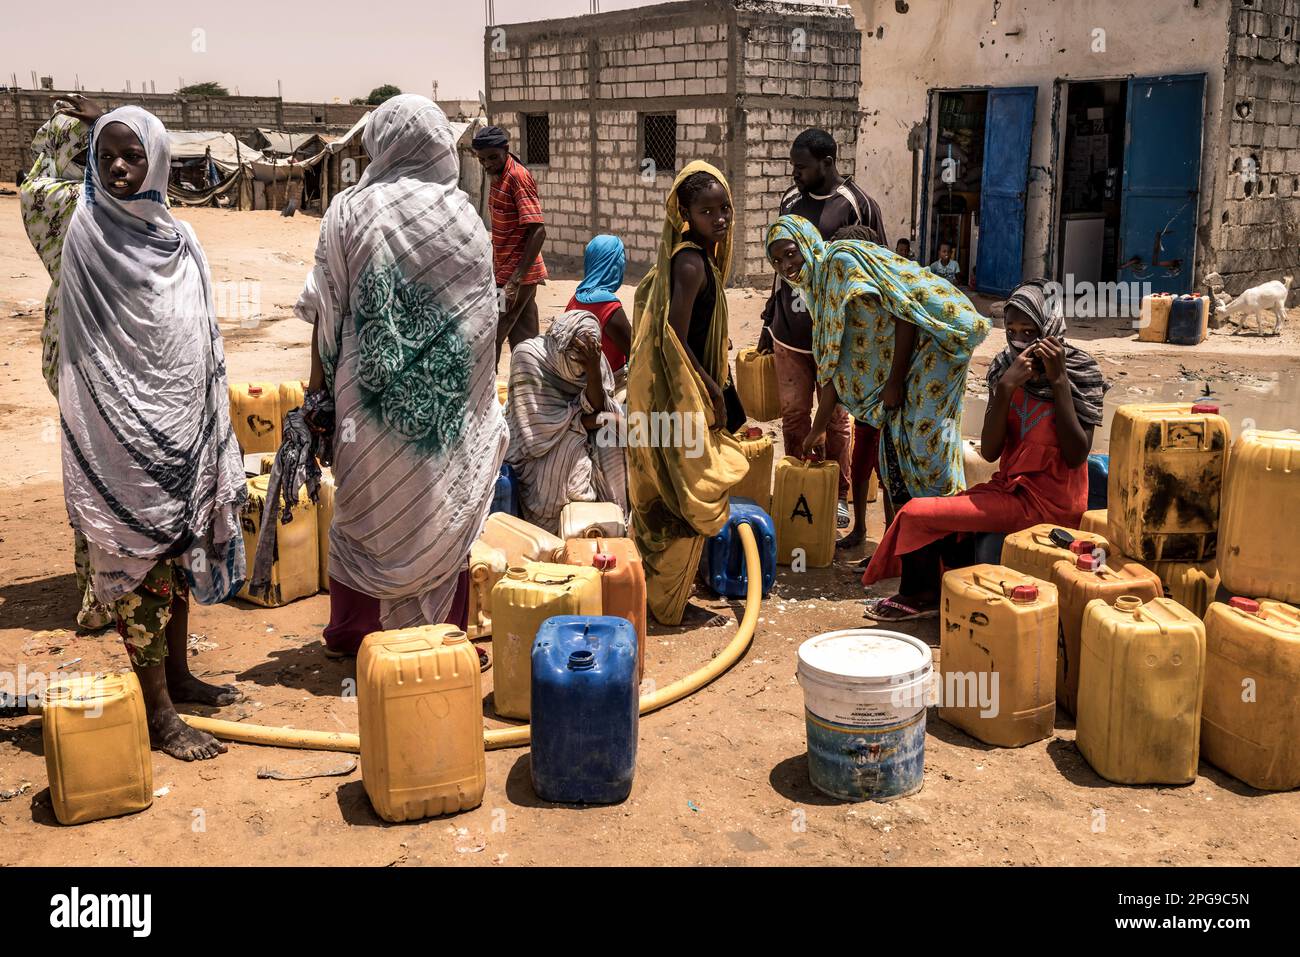 Punto d'acqua nel quartiere povero di Darnaim a Nouakshott, la capitale della Mauritania. La maggior parte delle persone che vivono qui provengono dalla tribù Haratin, che sono svantaggiate per molti aspetti, come le opportunità educative. Lo stato è una delle 40 contee meno sviluppate del mondo, come stabilito dalle Nazioni Unite. Foto Stock